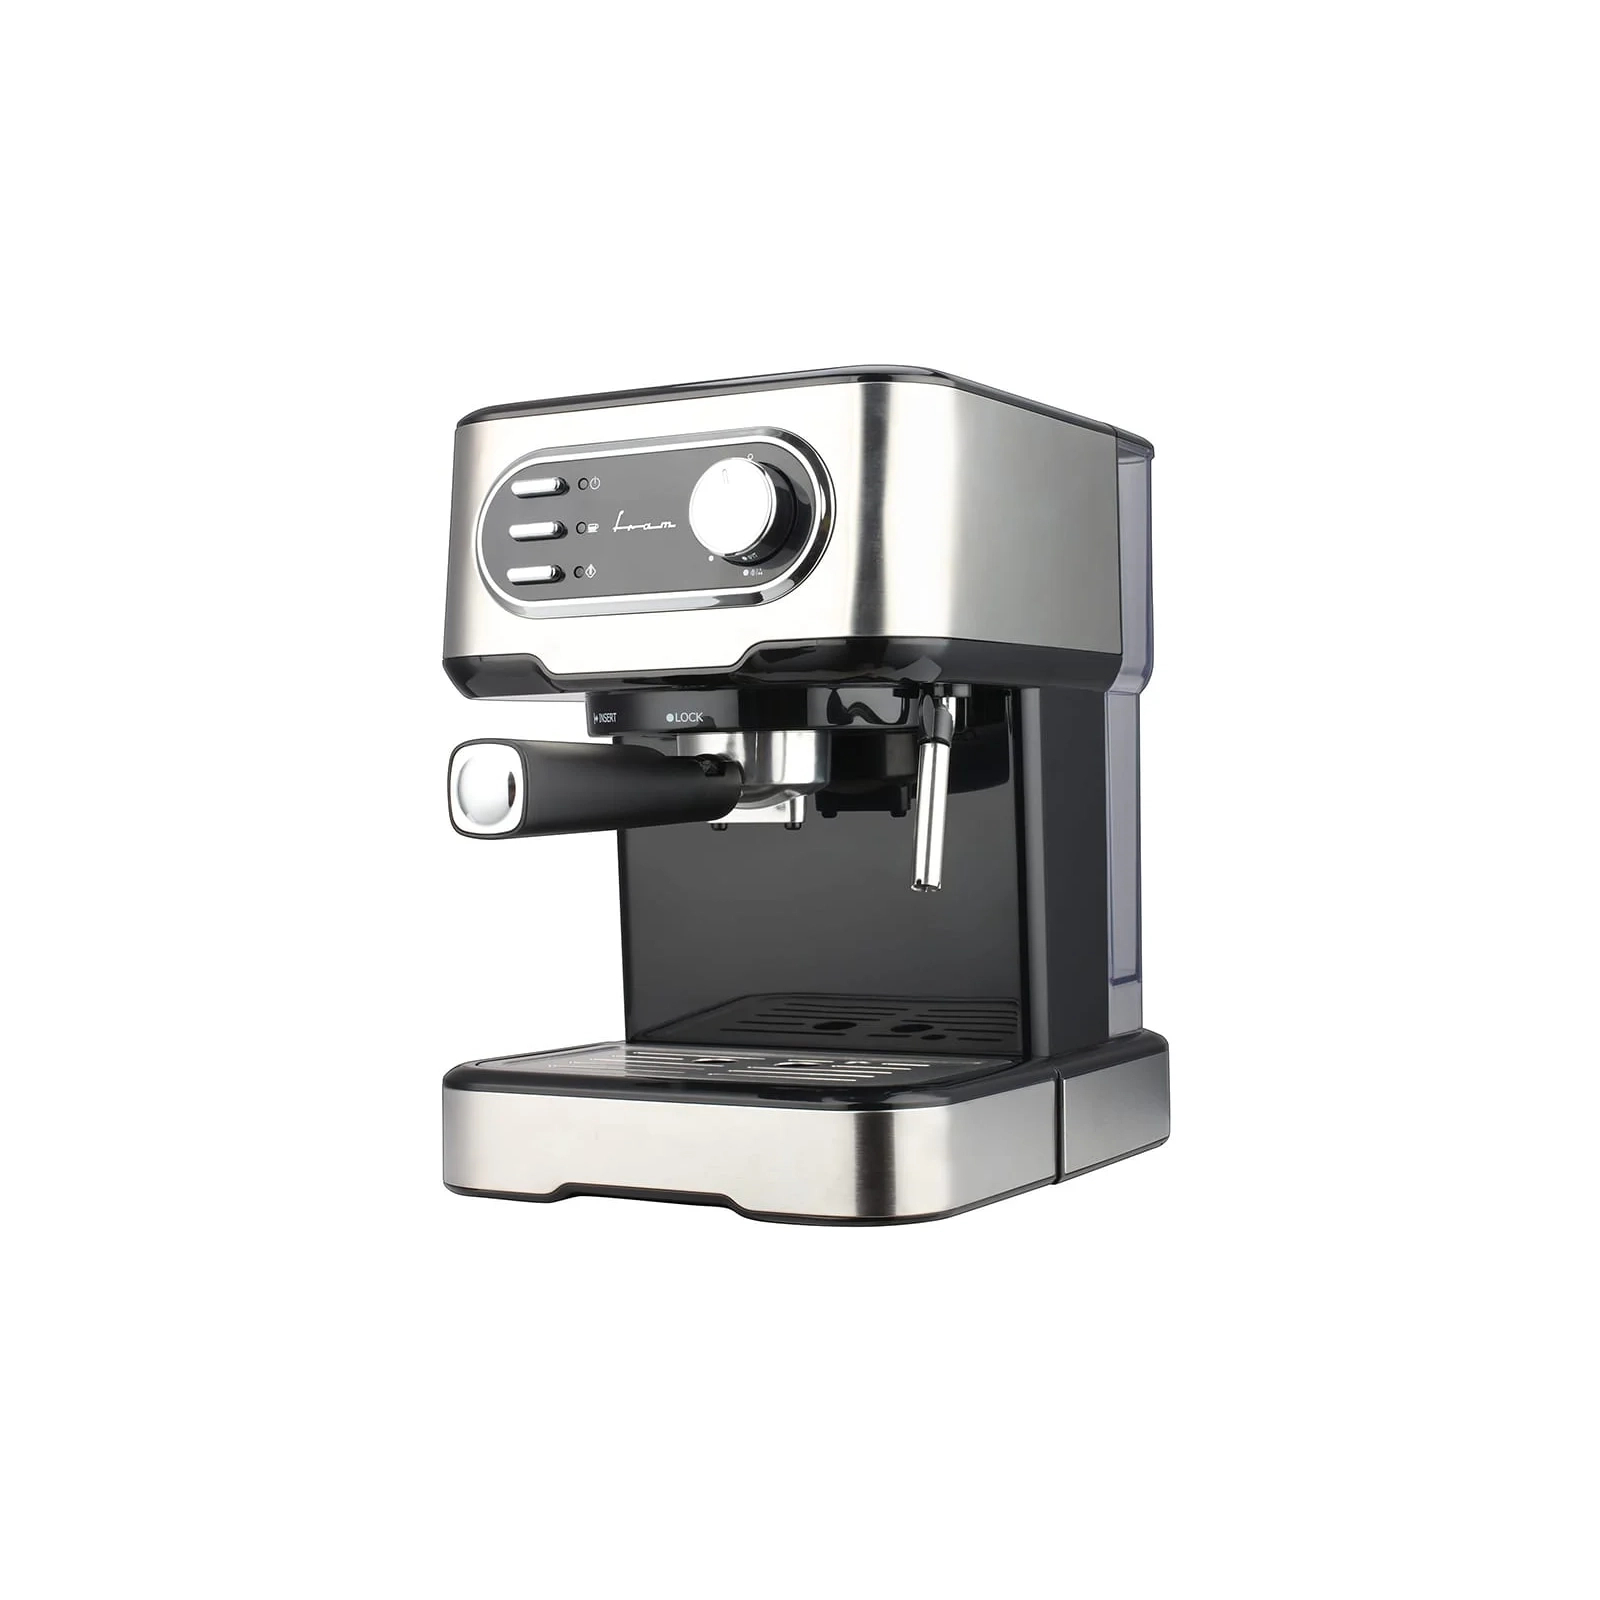 Рожковая кофеварка эспрессо FRAM FEM-850BKSS изображение 2